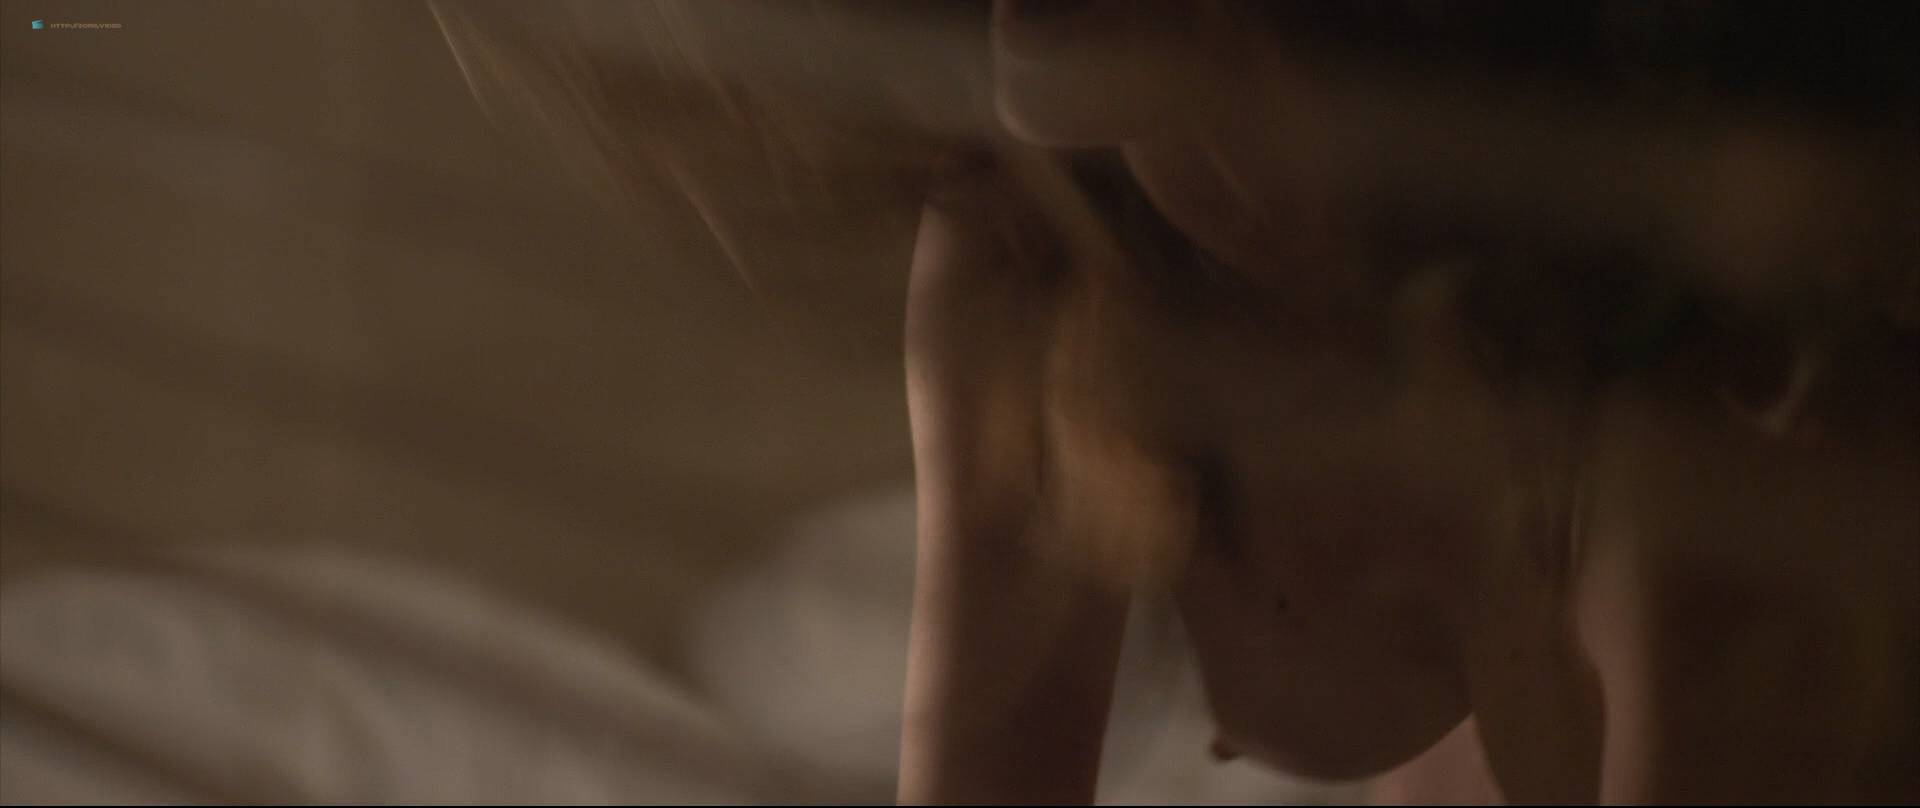 Sara Malakul Lane Nude Full Frontal Sarah Hagan Nude Sex Sun Choke 2015 Hd 720 1080p Bluray